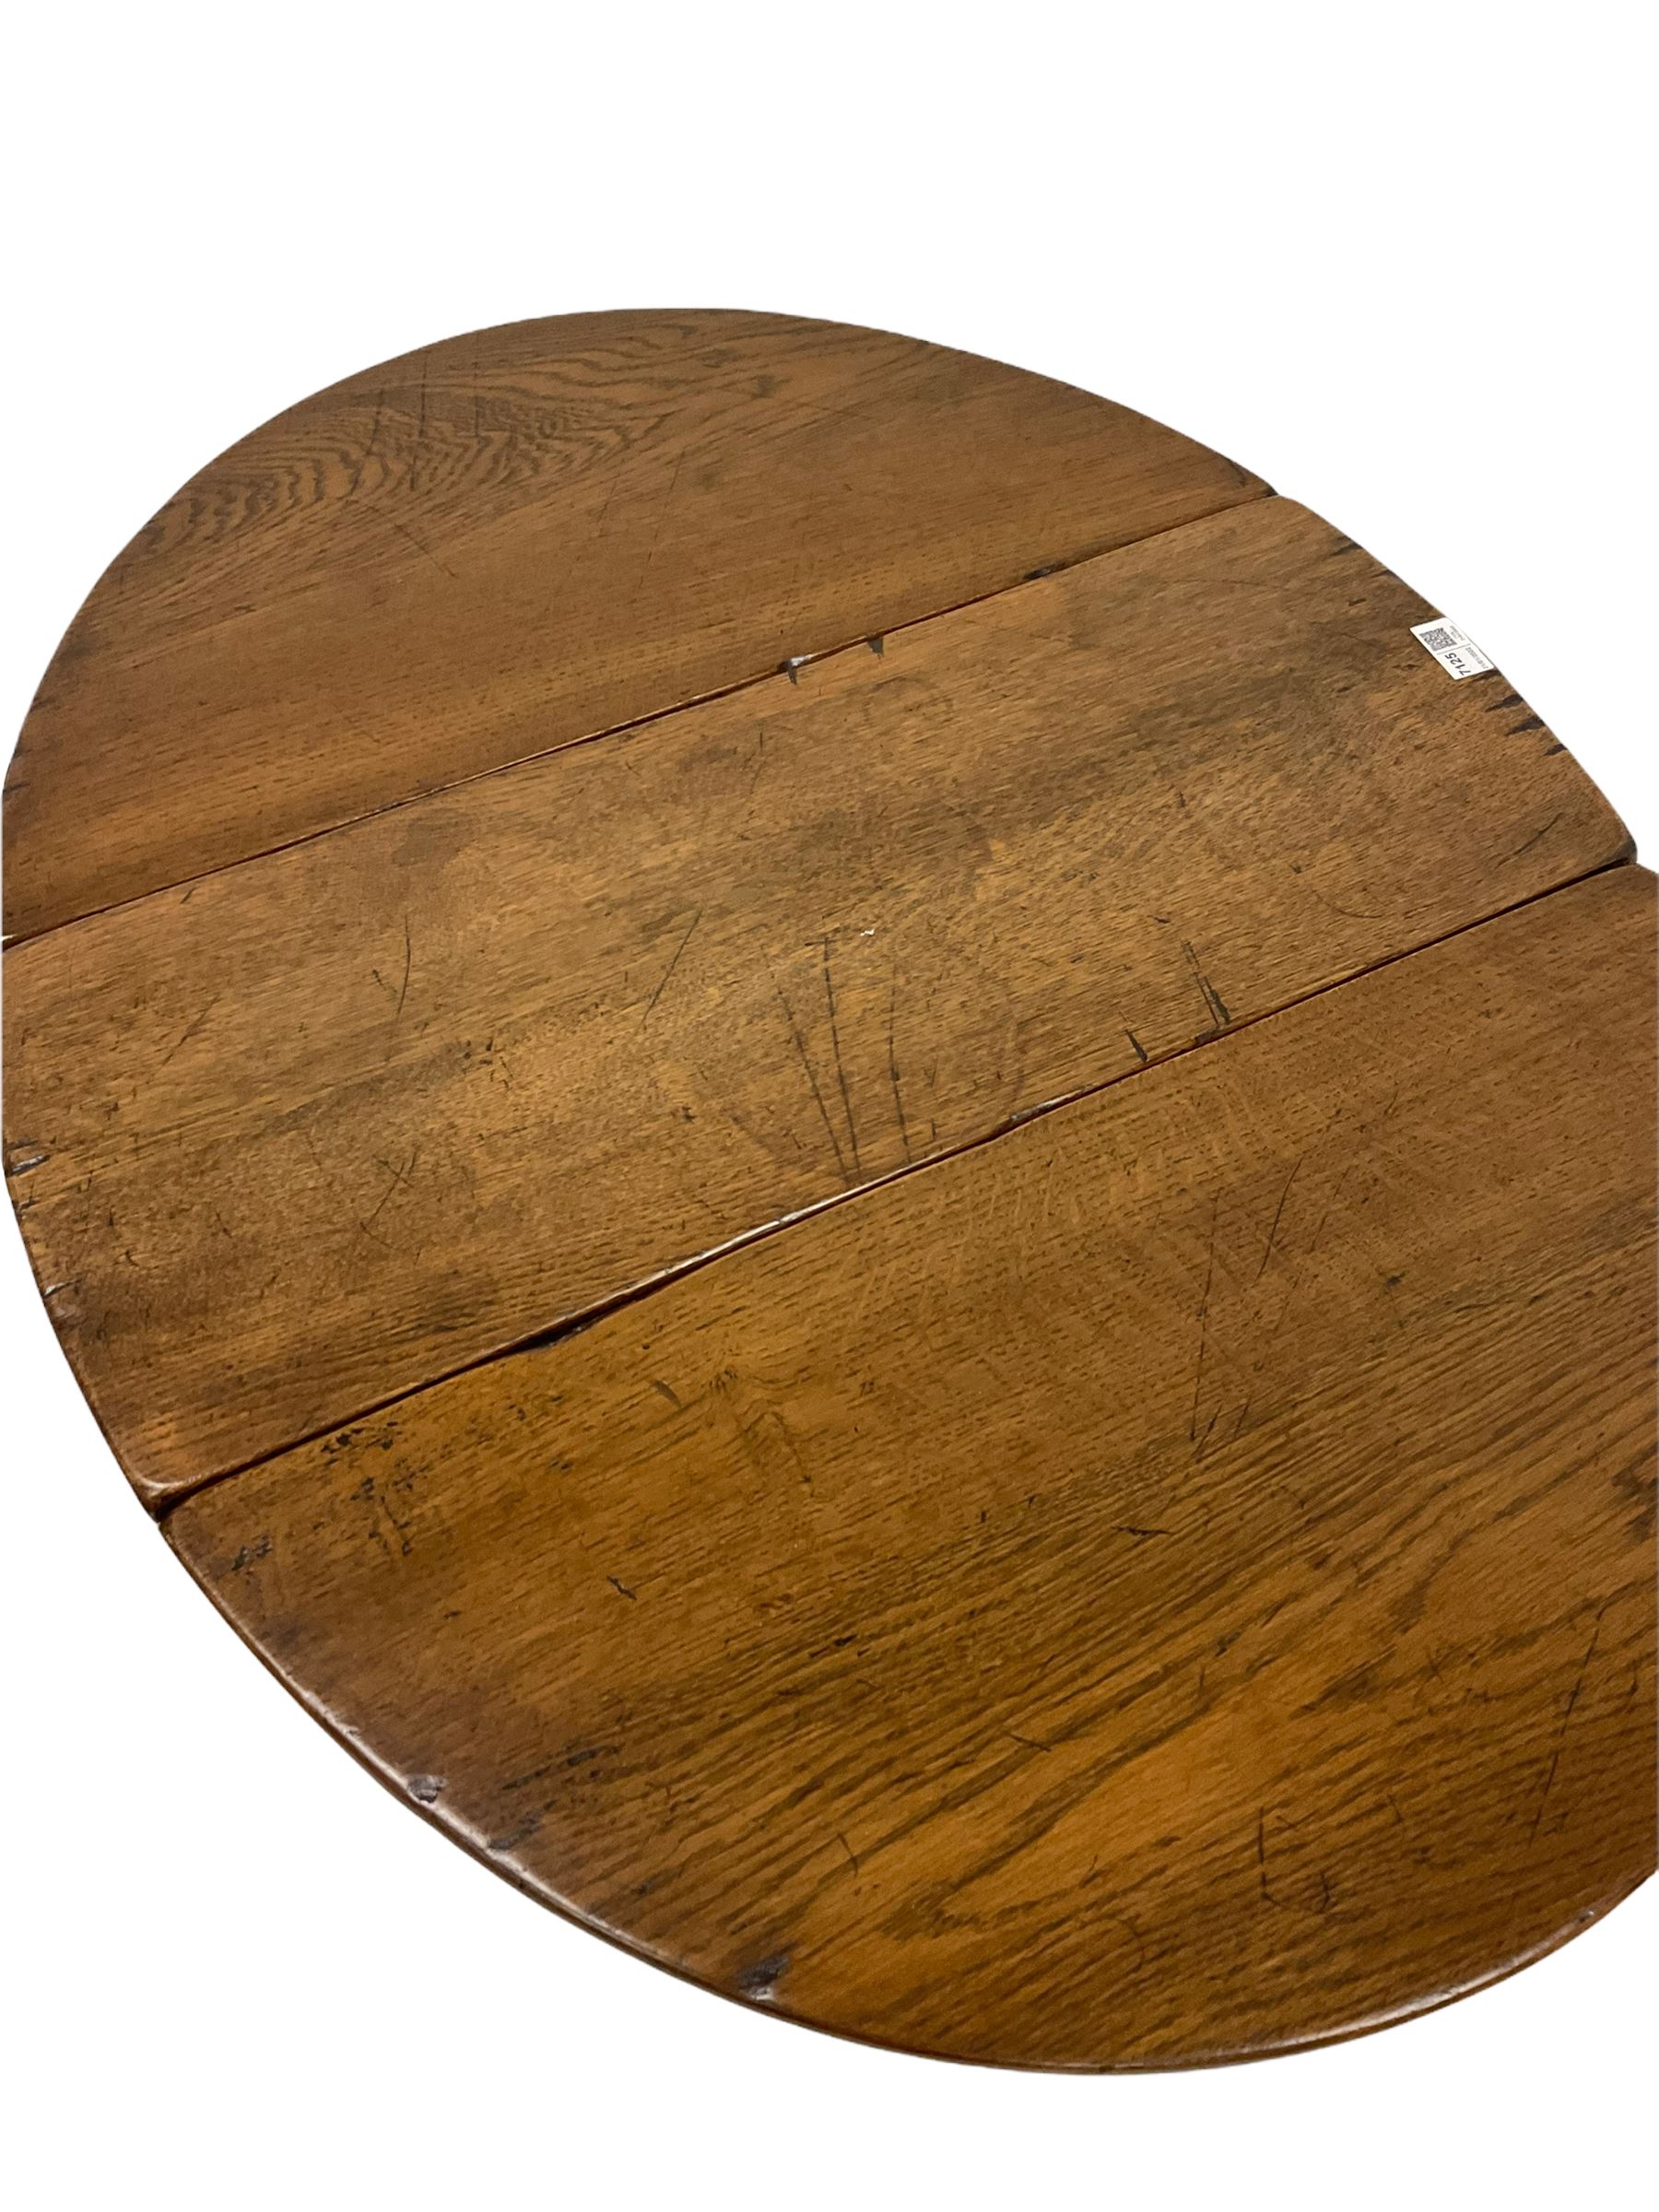 Oak gate leg table - Image 4 of 4